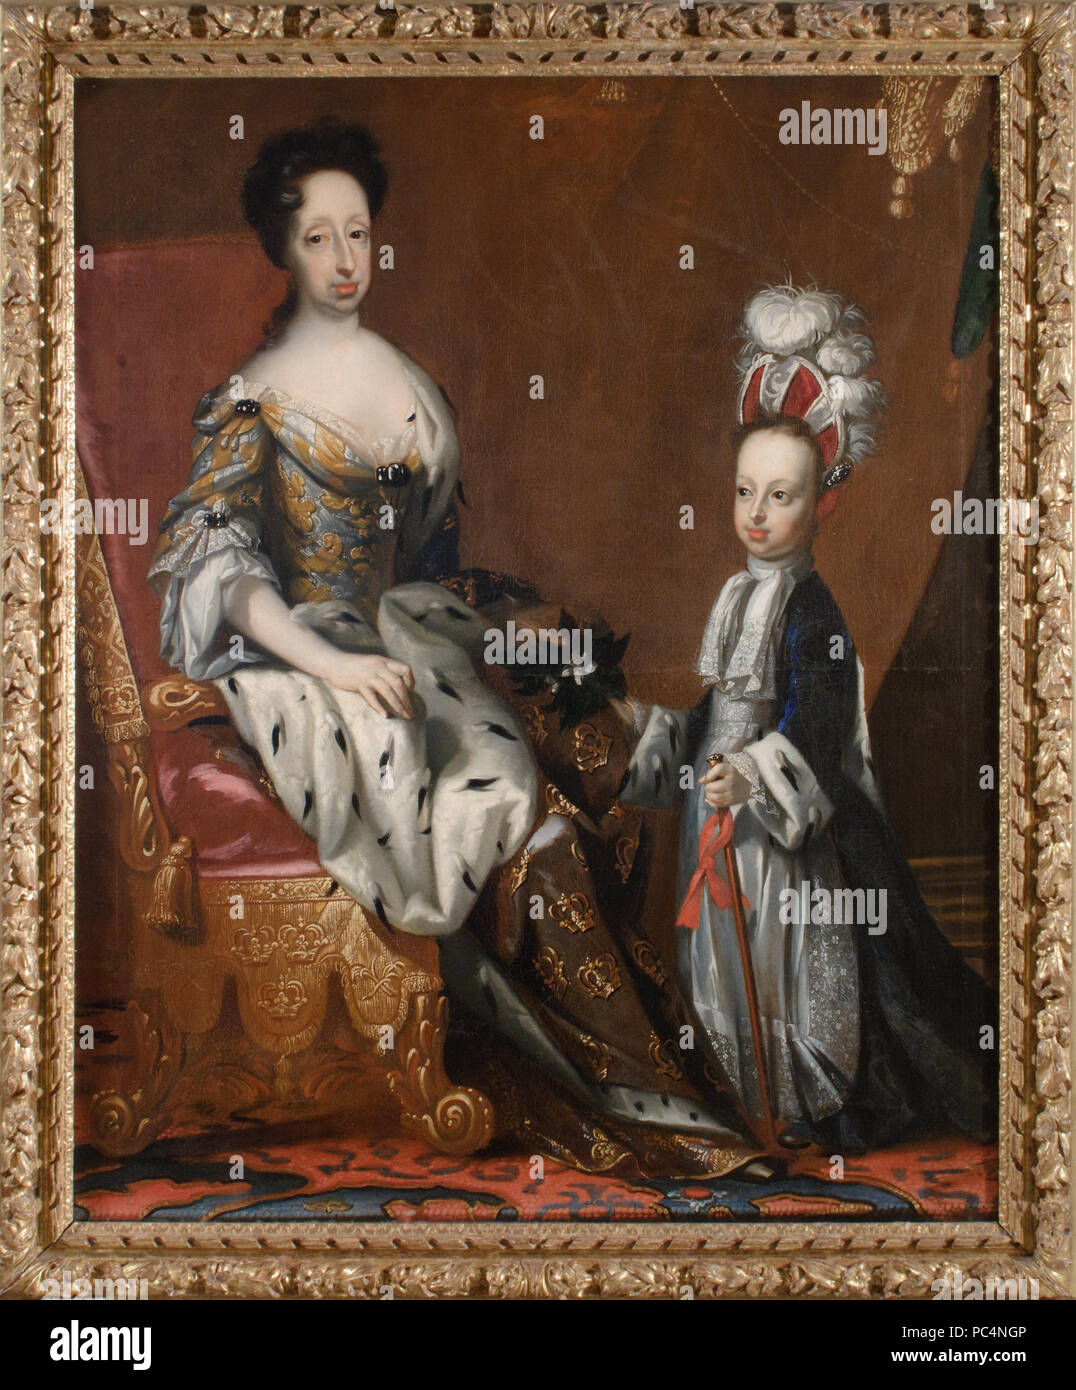 42 Hedvig Eleonora, 1636-1715, drottning av Sverige och Karl Fredrik, 1700-1739, hertig av Holstein - Nationalmuseum - 14996 Stock Photo